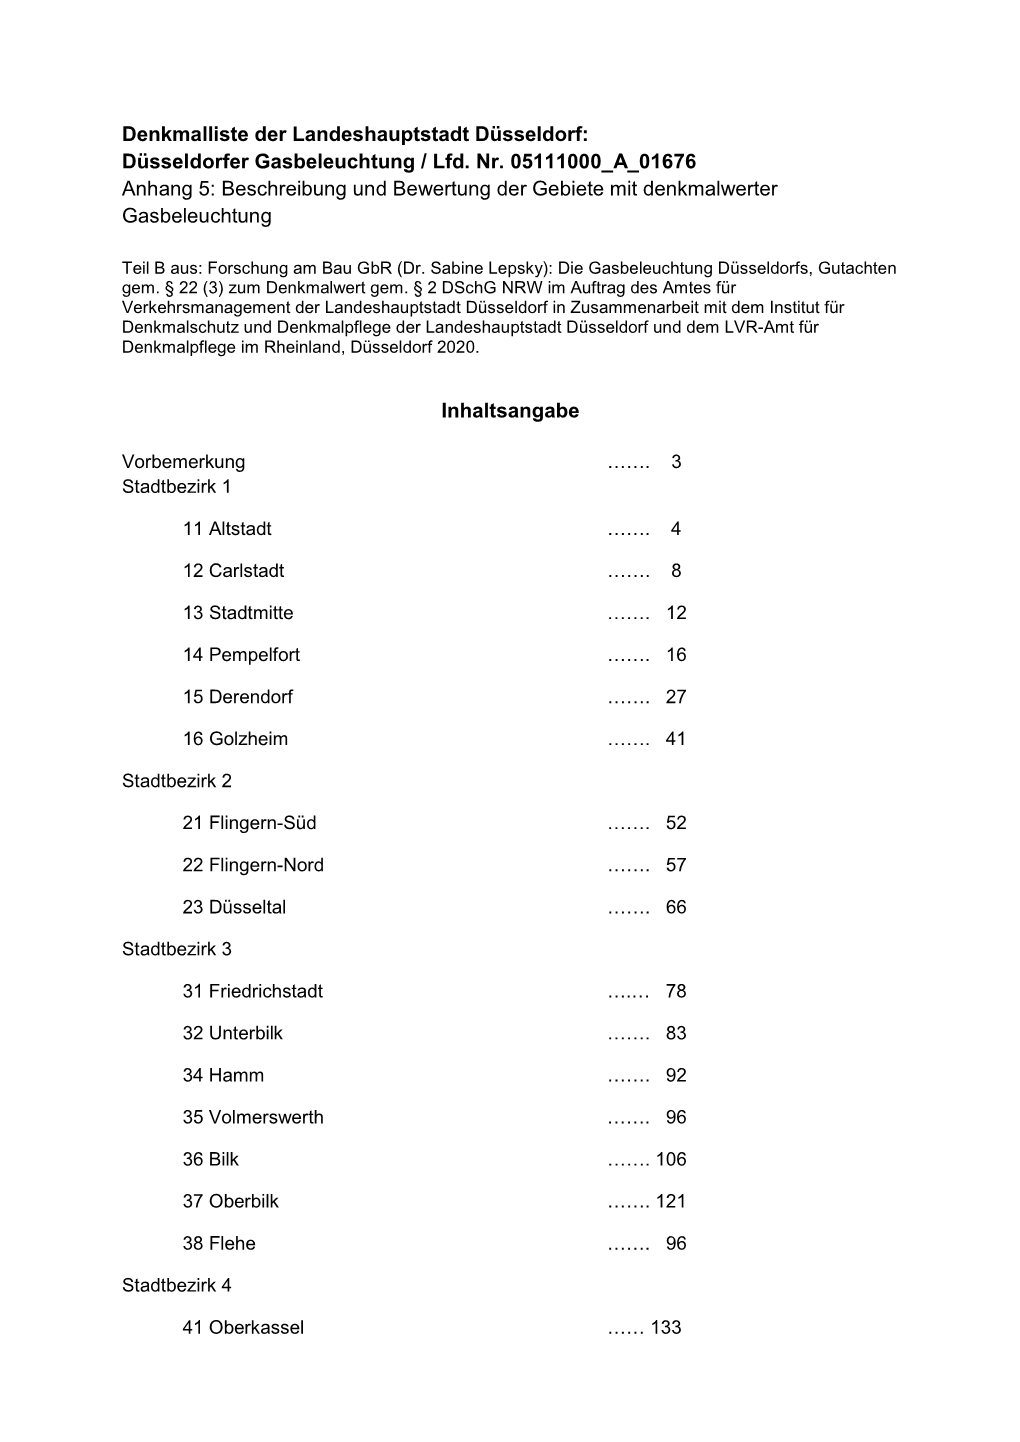 Düsseldorfer Gasbeleuchtung / Lfd. Nr. 05111000 a 01676 Anhang 5: Beschreibung Und Bewertung Der Gebiete Mit Denkmalwerter Gasbeleuchtung